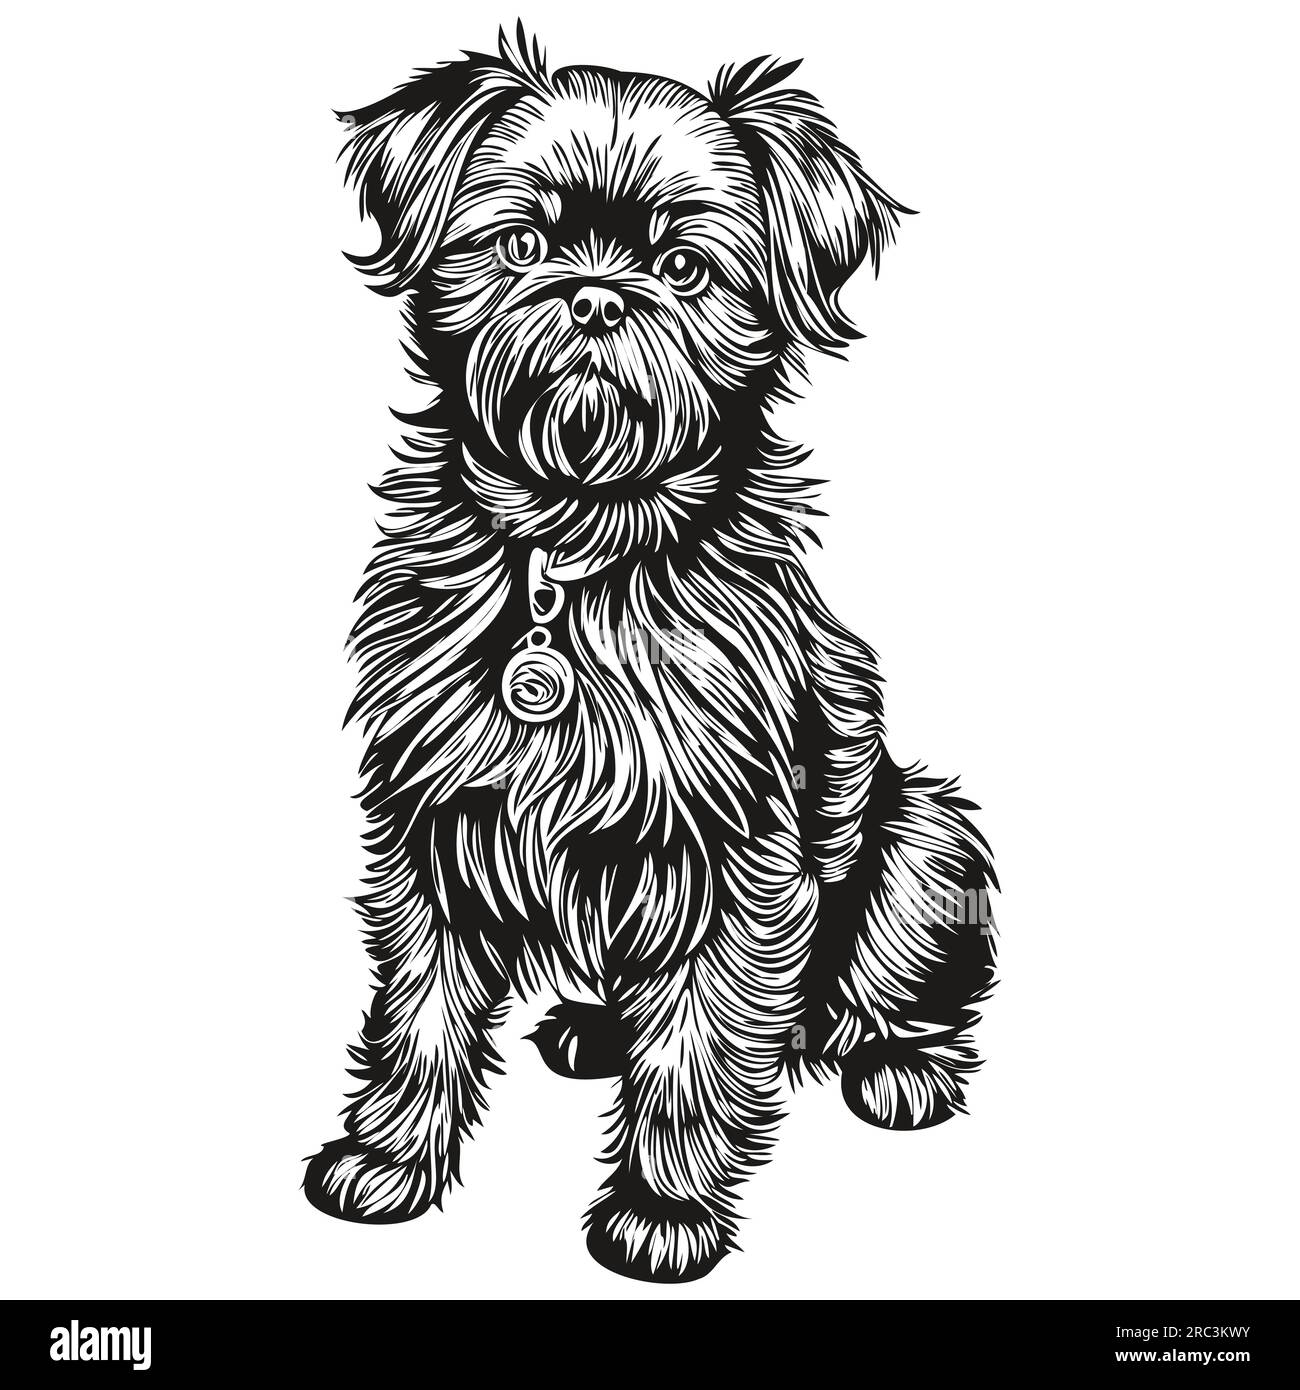 Affenpinscher chien t shirt imprimé noir et blanc, mignon vecteur de dessin de contour drôle Illustration de Vecteur